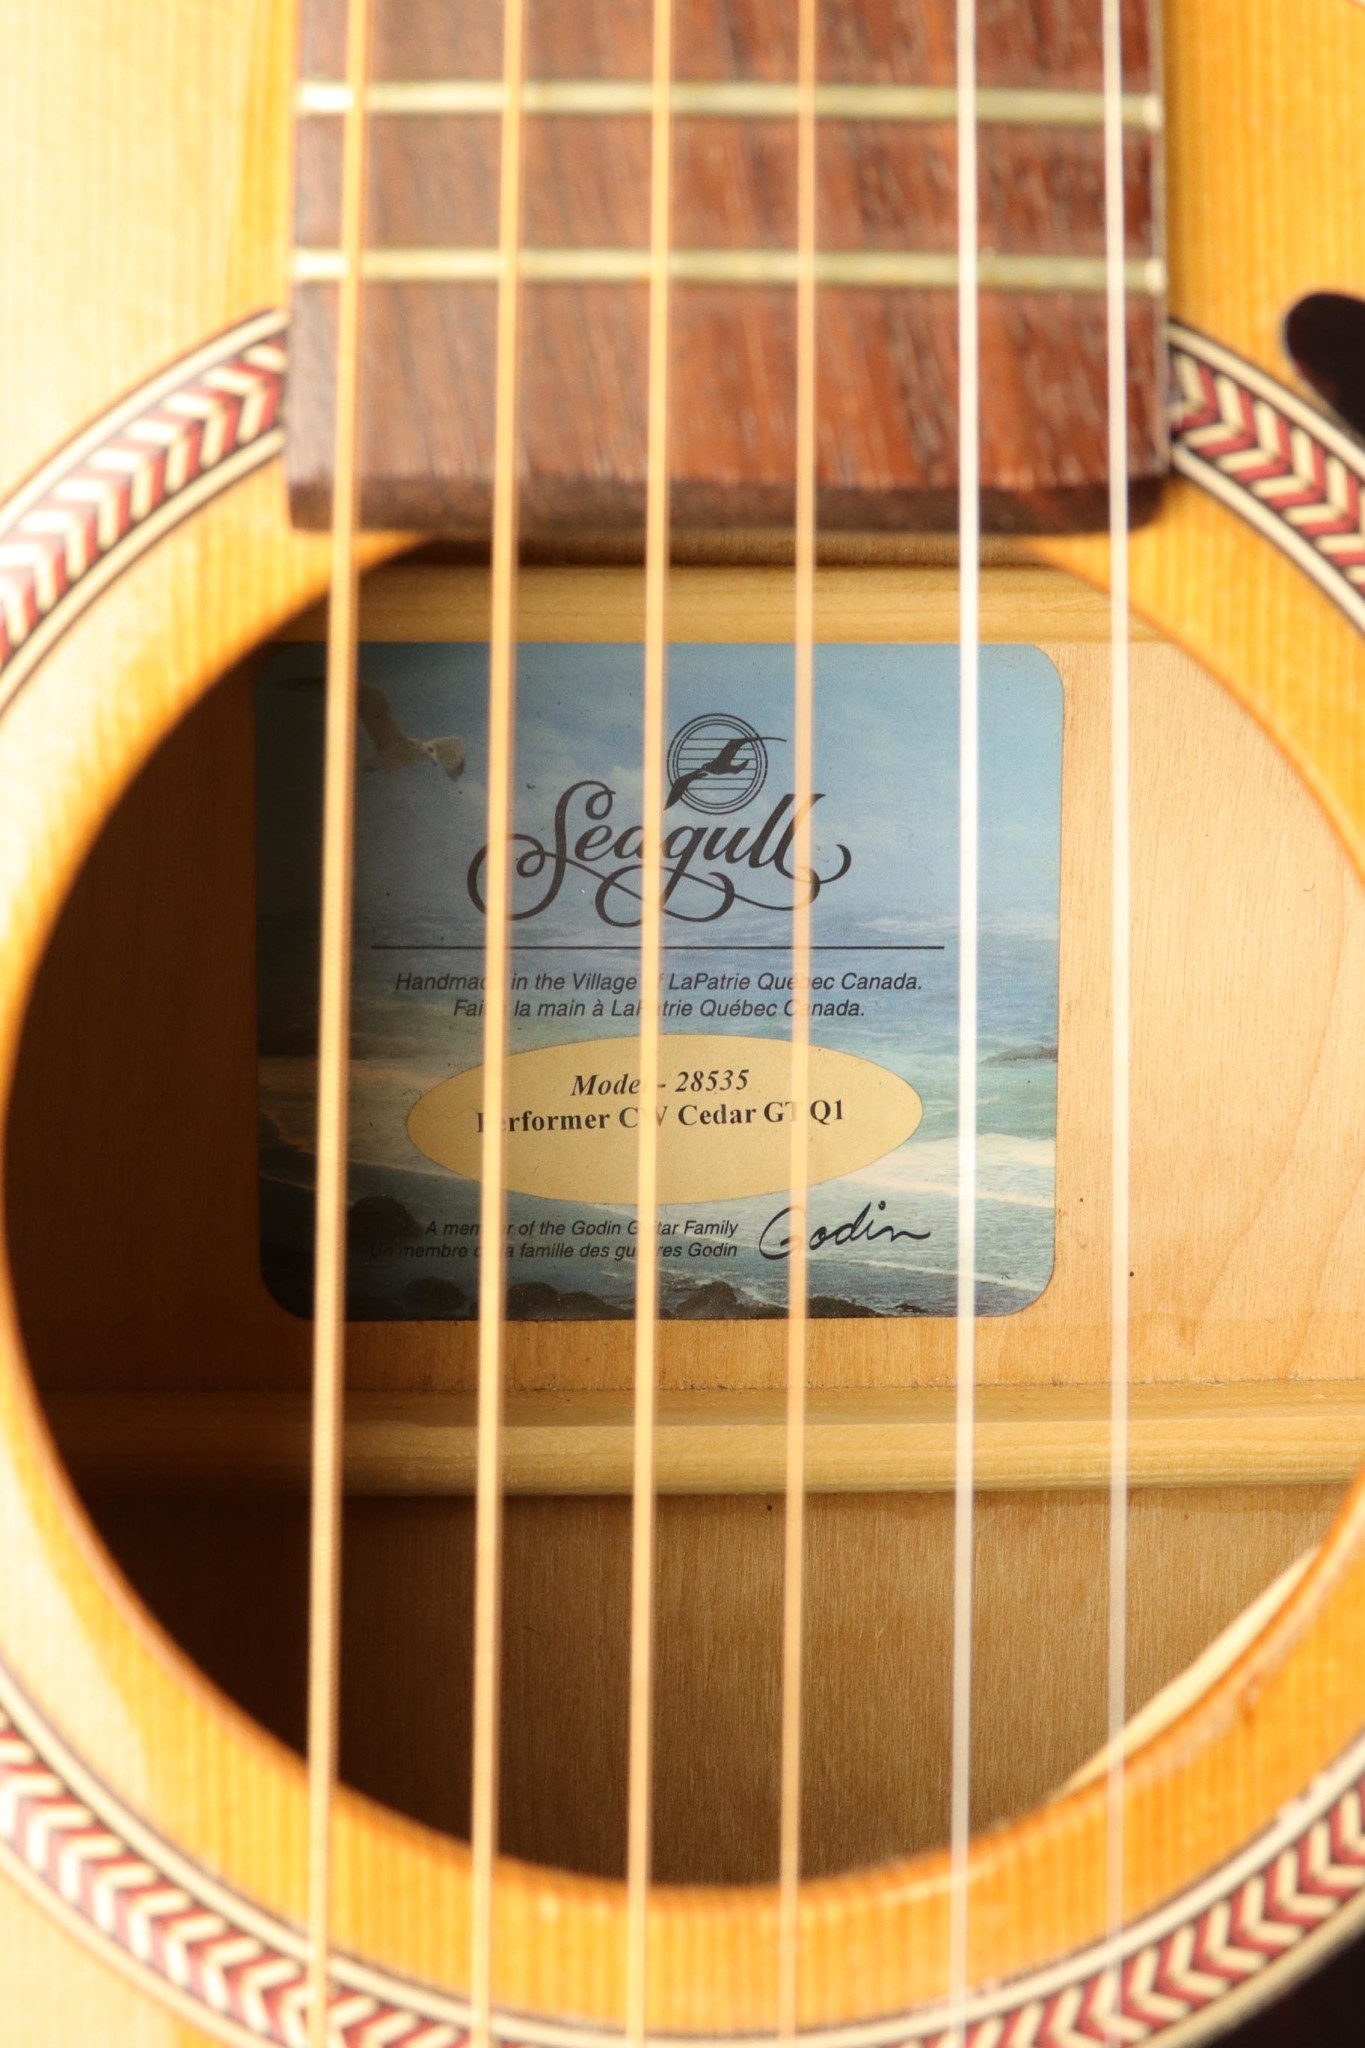 Seagull Seagull Performer CW GT QI Acoustic Guitar - Cedar Gloss